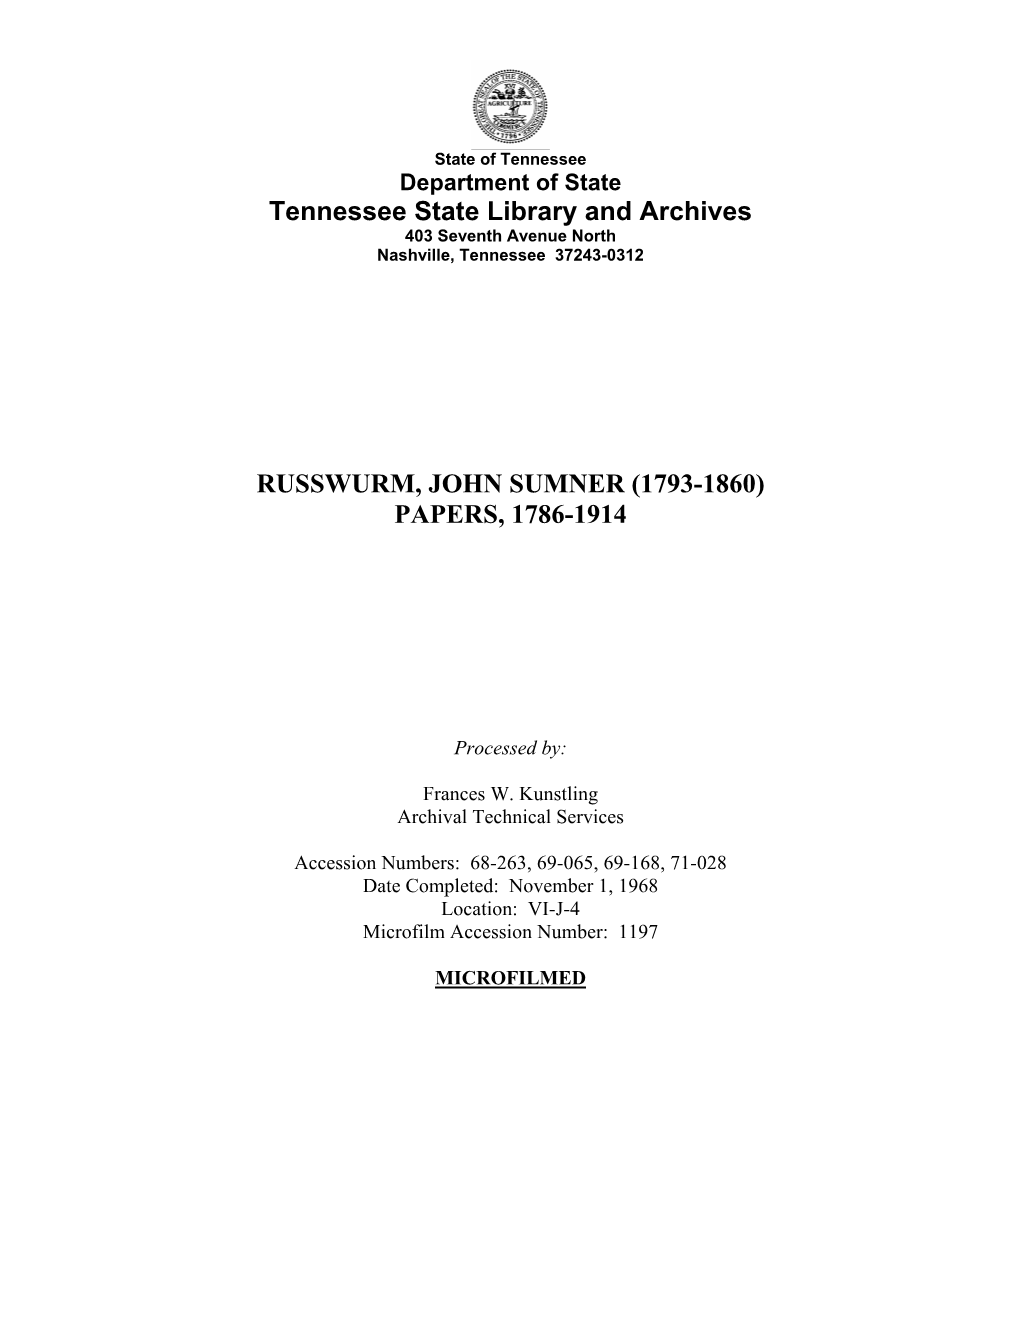 John Sumner Russwurm Papers, 1786-1914